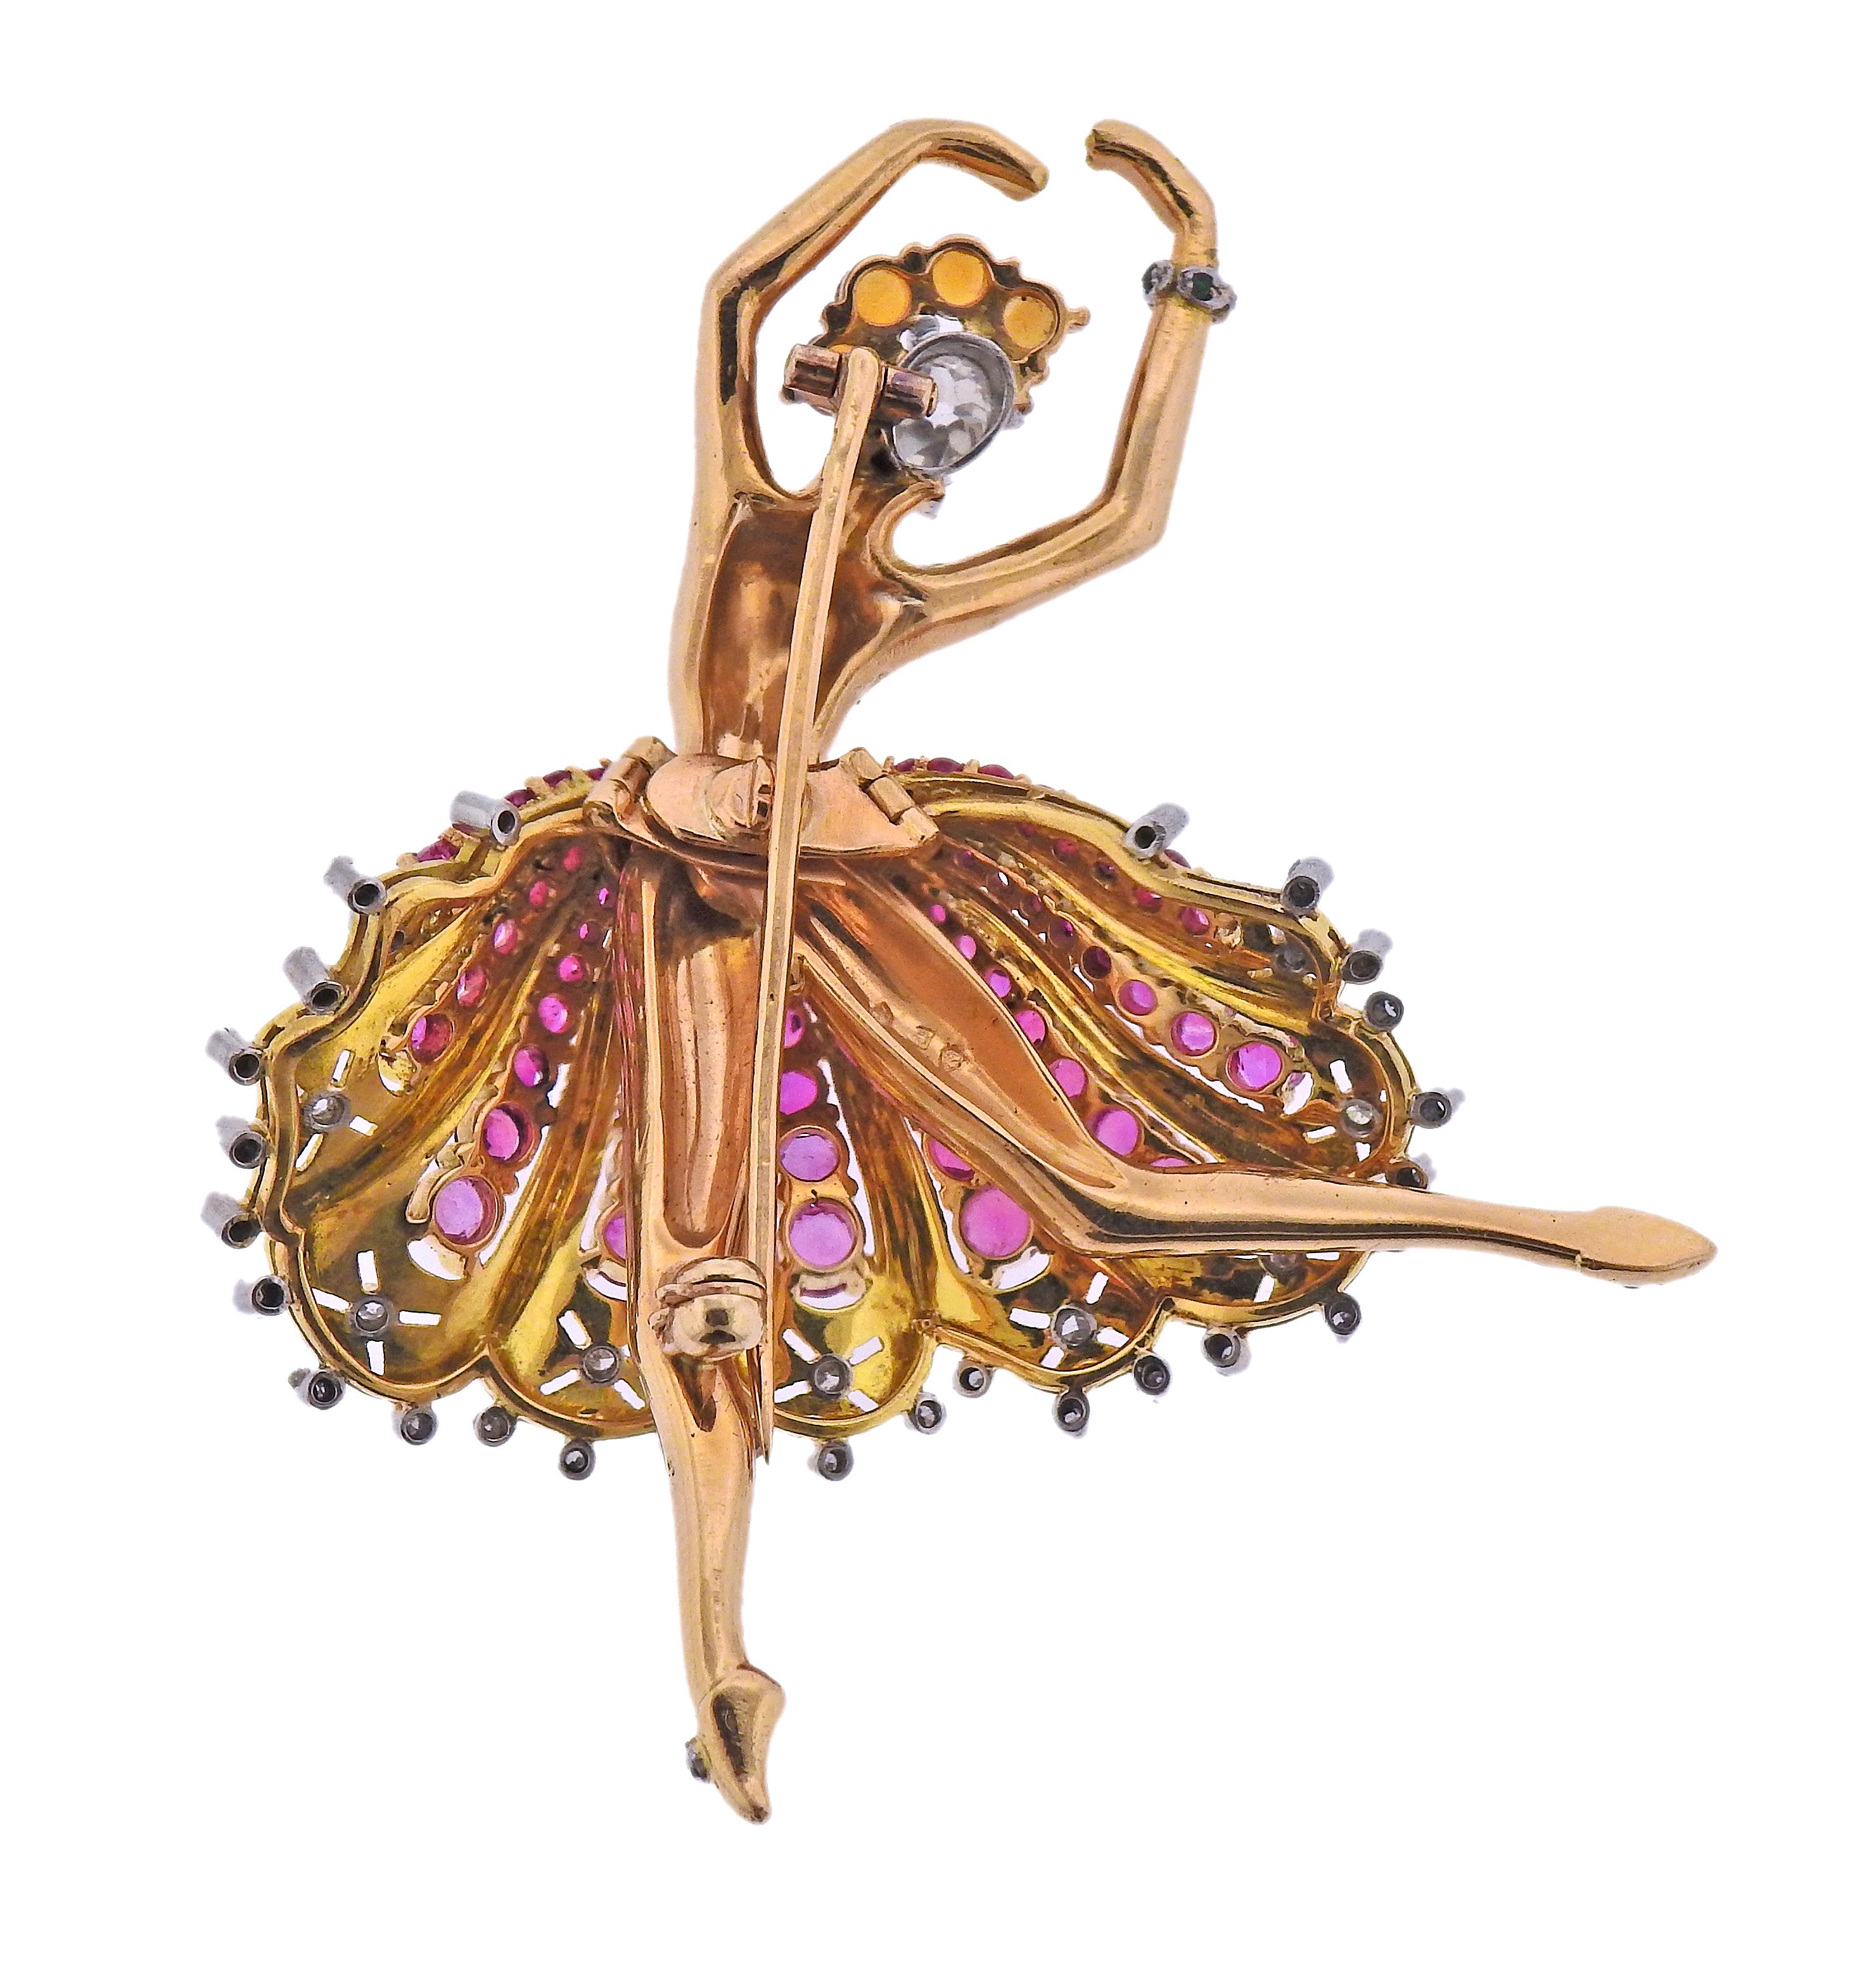 Retro circa 1940er Jahre, Französisch gemacht Ballerina 18k Gold Brosche, verziert mit Rubinen, Zitrinen und ca. 0,60ctw in Diamanten (Mitte großen Stein ist ca. 0,40-0,44ct). Brosche ist 2,5